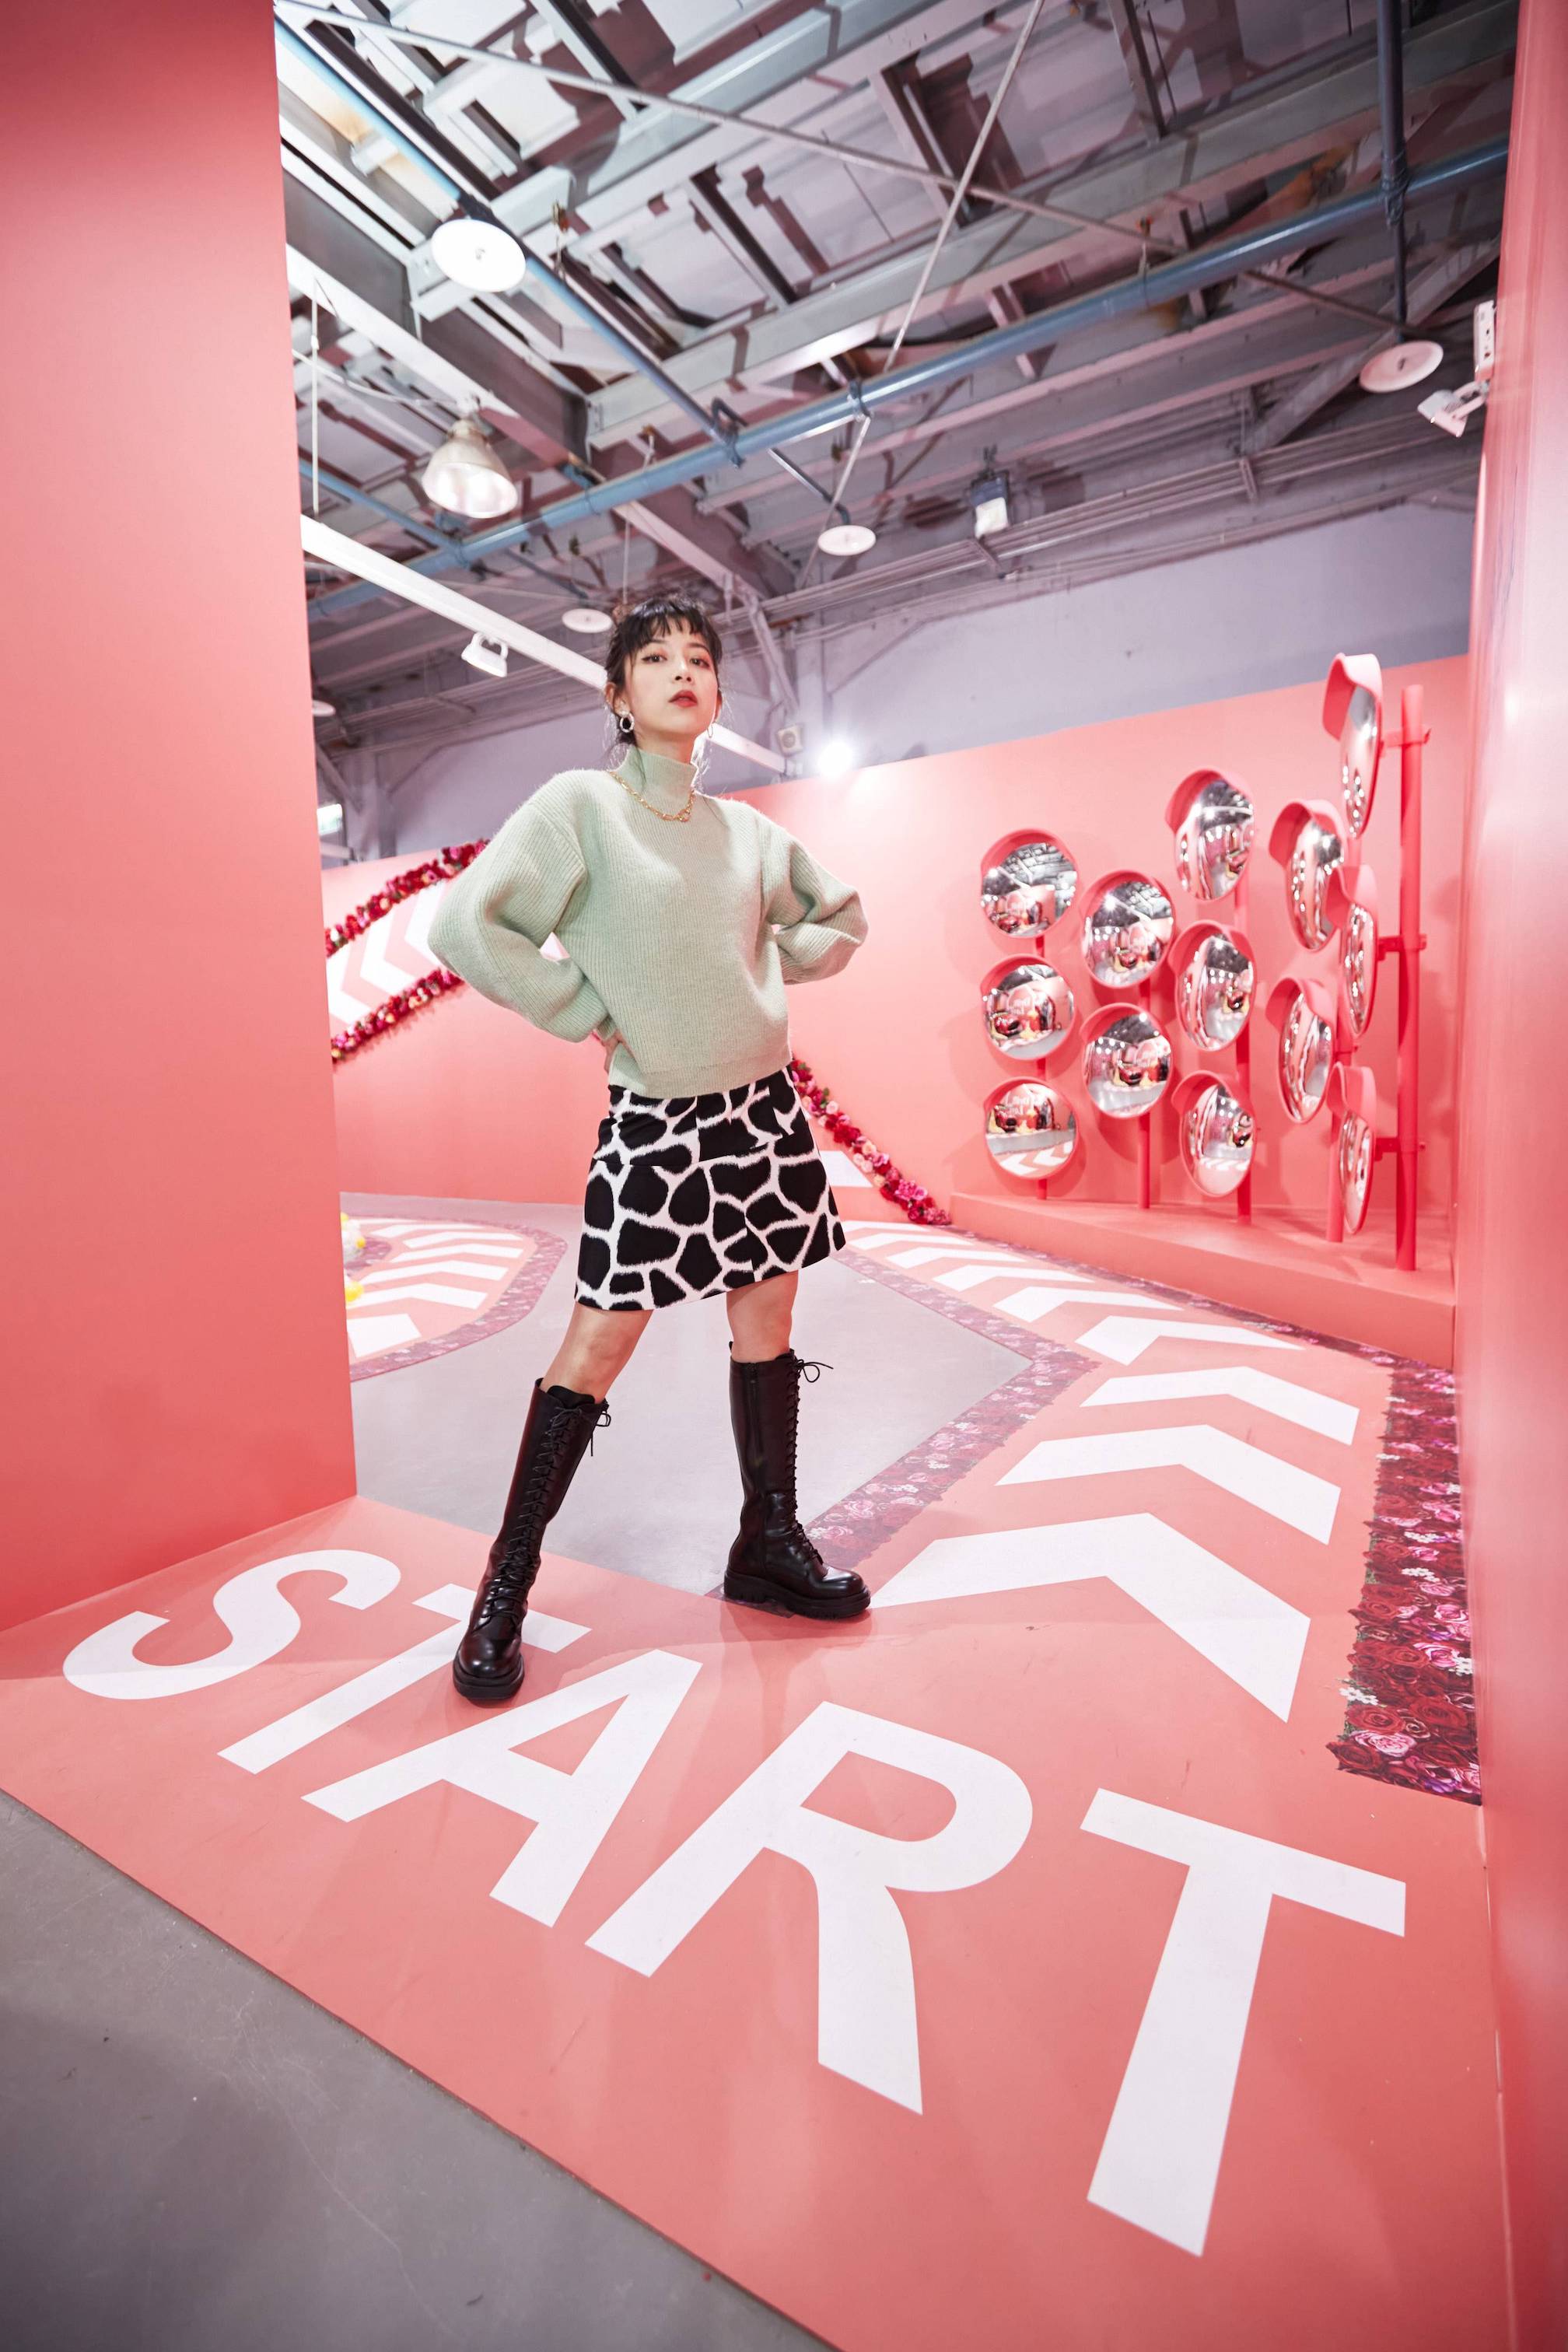 Toyota 於色廊展設計三個最佳拍照點，包含「遇愛轉角鏡」、「滿溢而出的幸福泡泡」與「浪漫玫瑰花牆」。